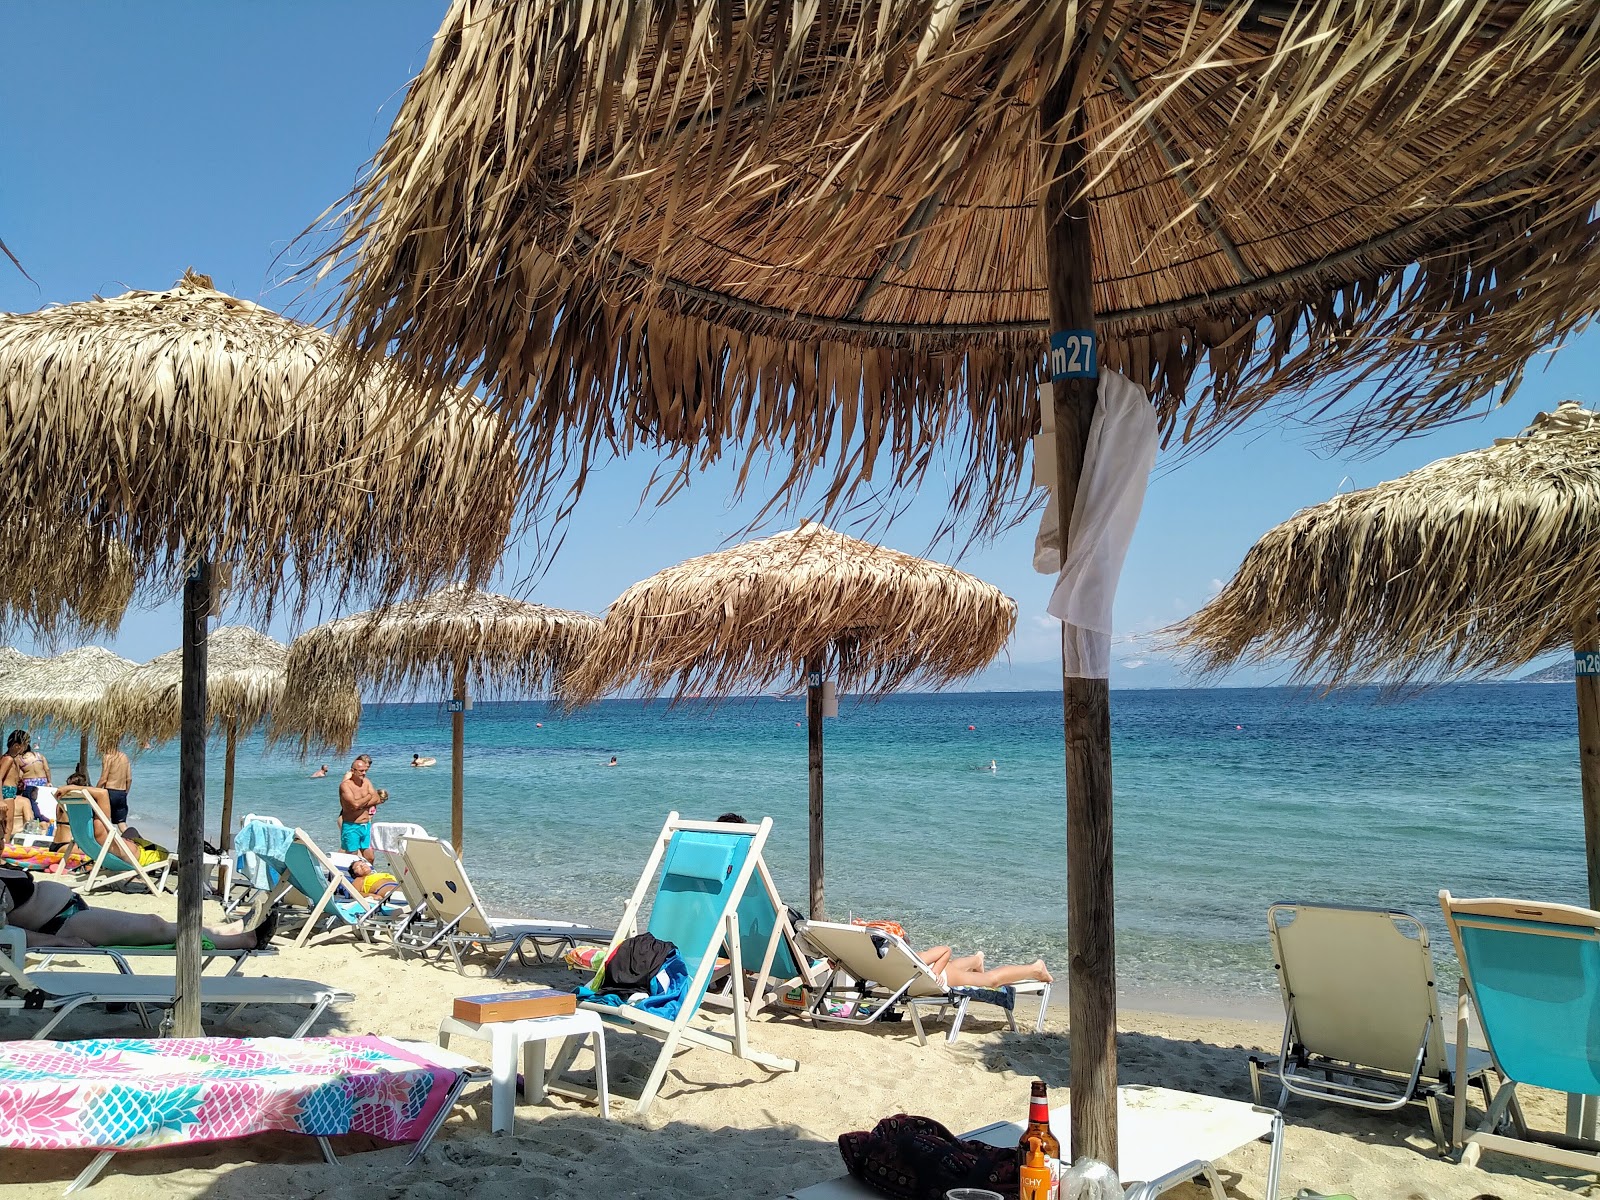 Tarsanas beach'in fotoğrafı turkuaz saf su yüzey ile